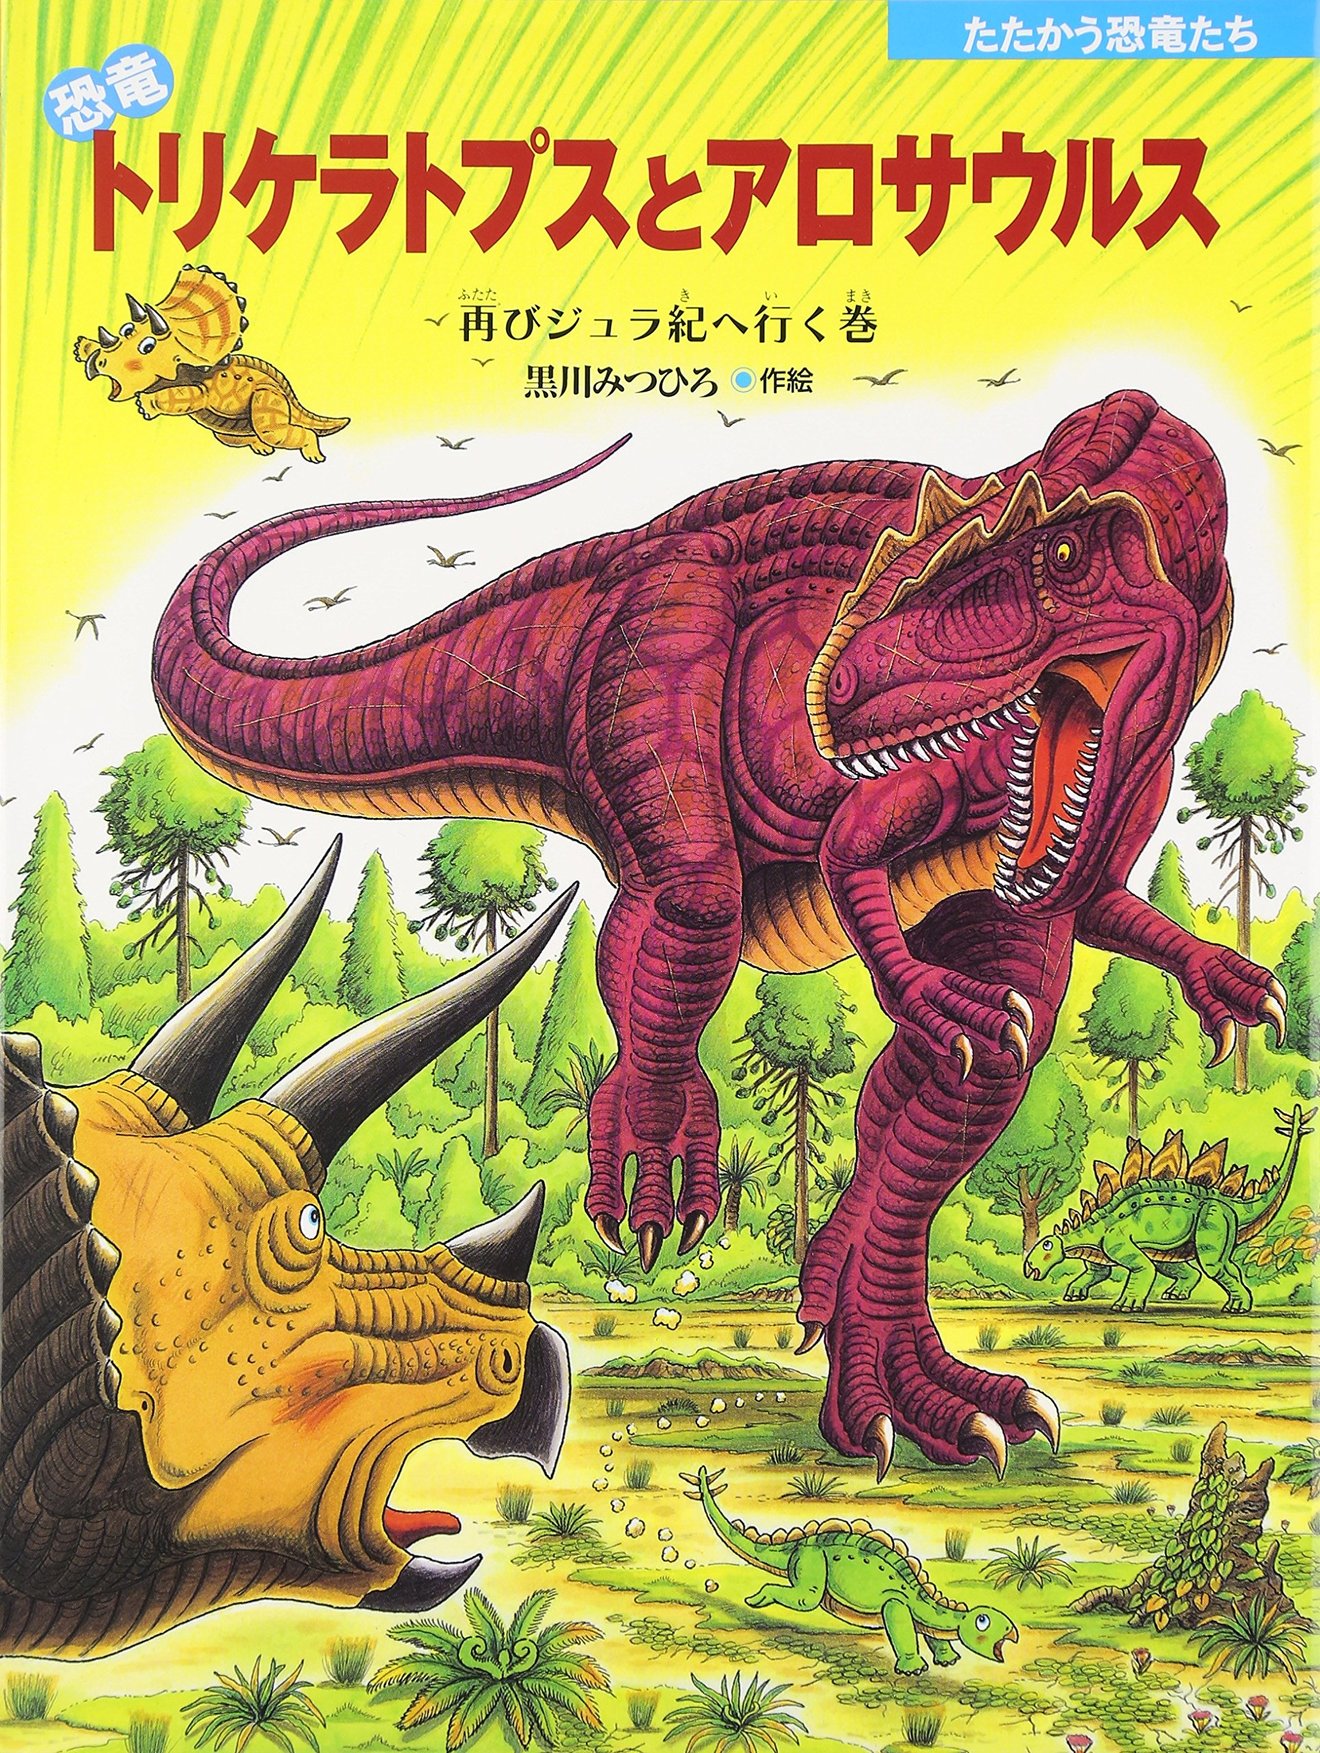 5分でわかるアロサウルス 最強肉食恐竜の生態がかっこいい 羽毛や化石など 教養も ホンシェルジュ